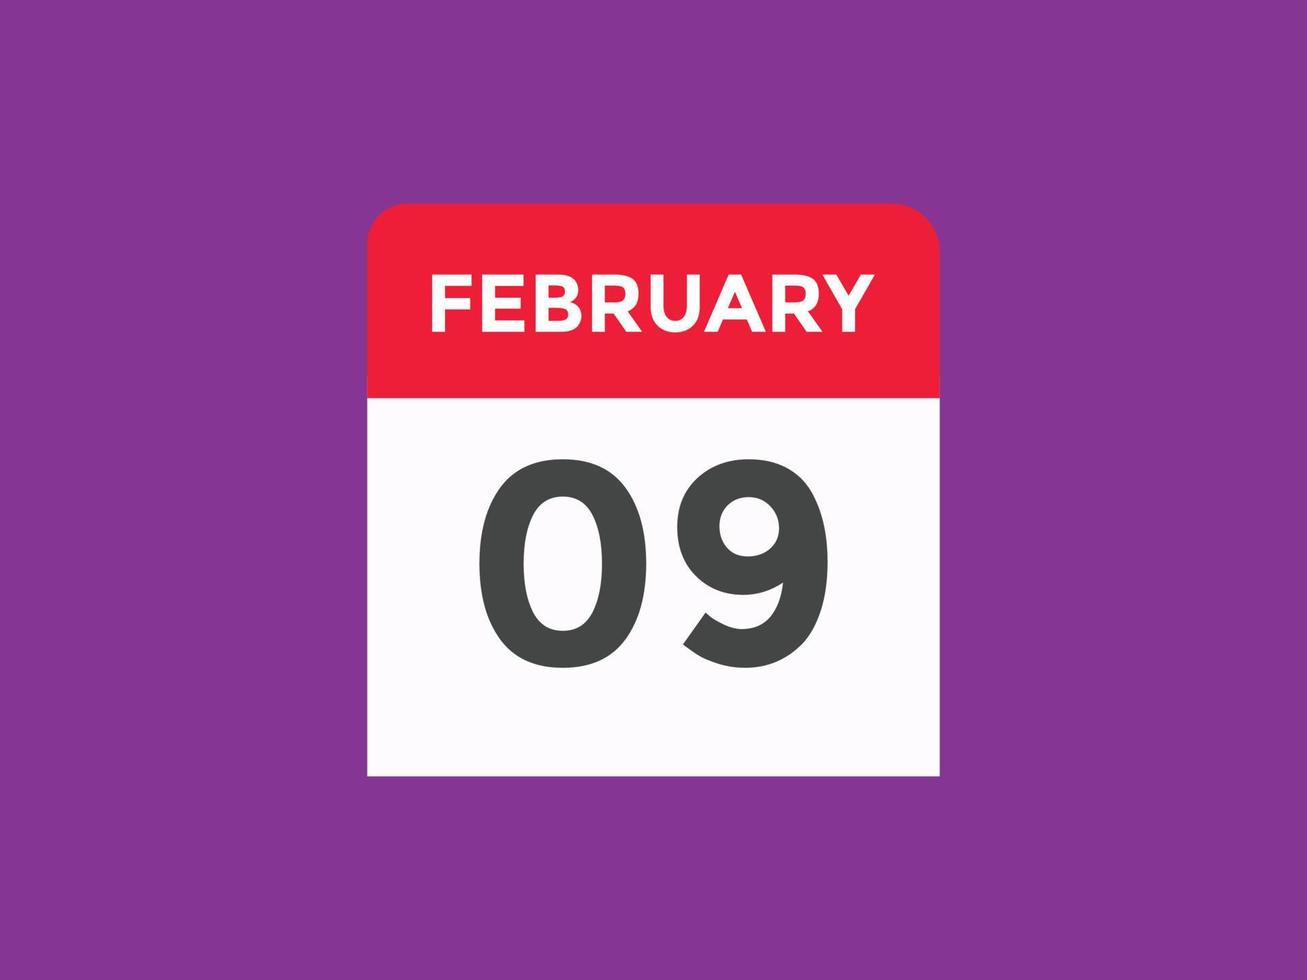 Recordatorio del calendario del 9 de febrero. Plantilla de icono de calendario diario del 9 de febrero. plantilla de diseño de icono de calendario 9 de febrero. ilustración vectorial vector